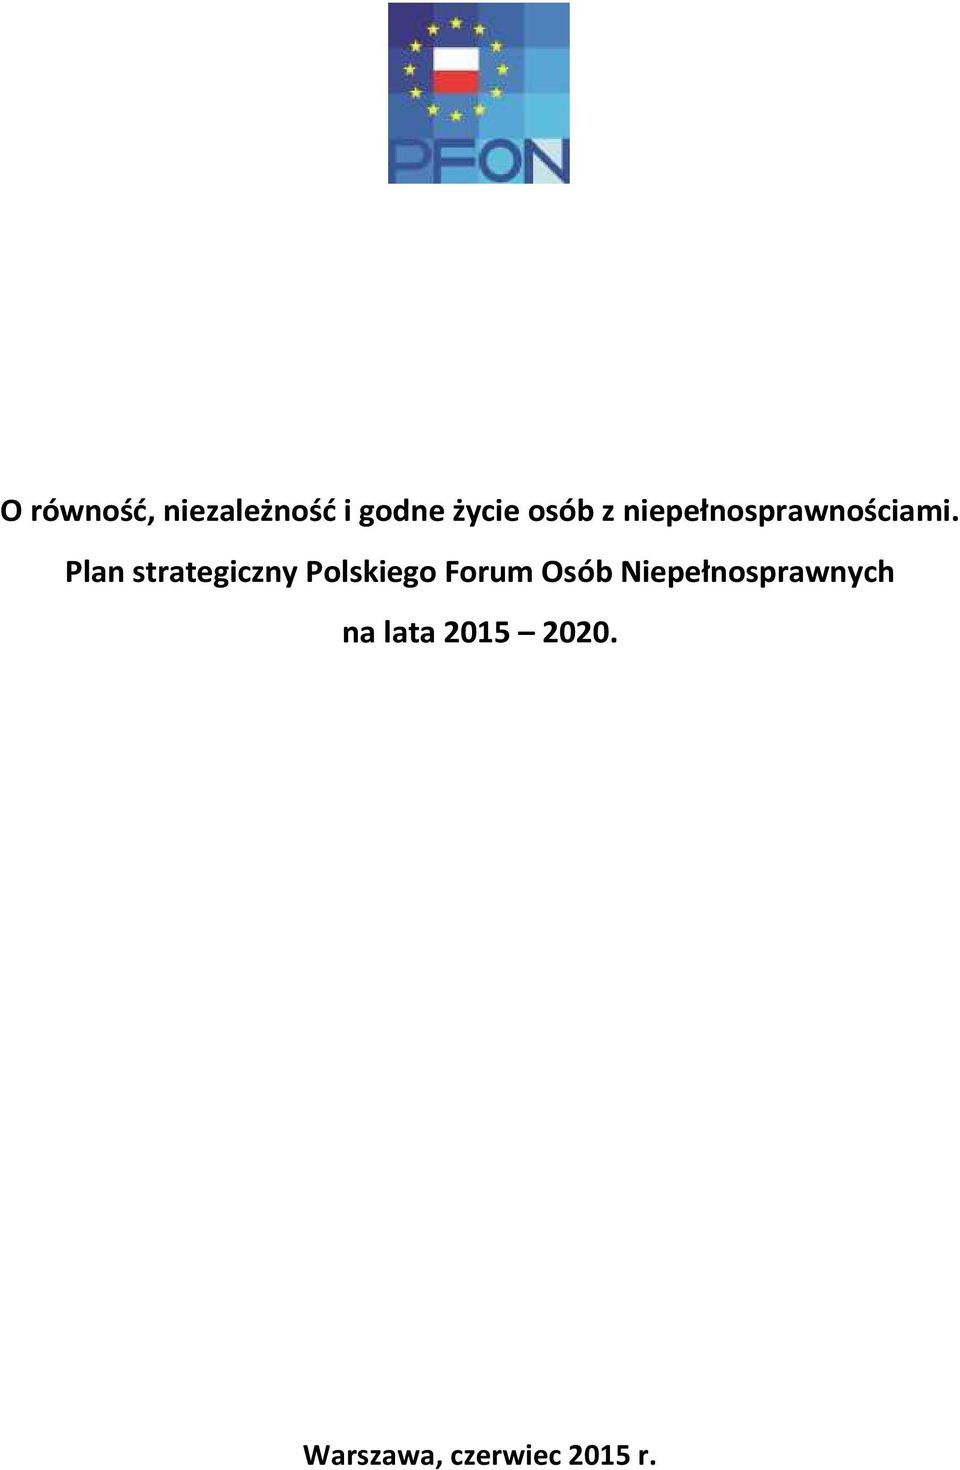 Plan strategiczny Polskiego Forum Osób